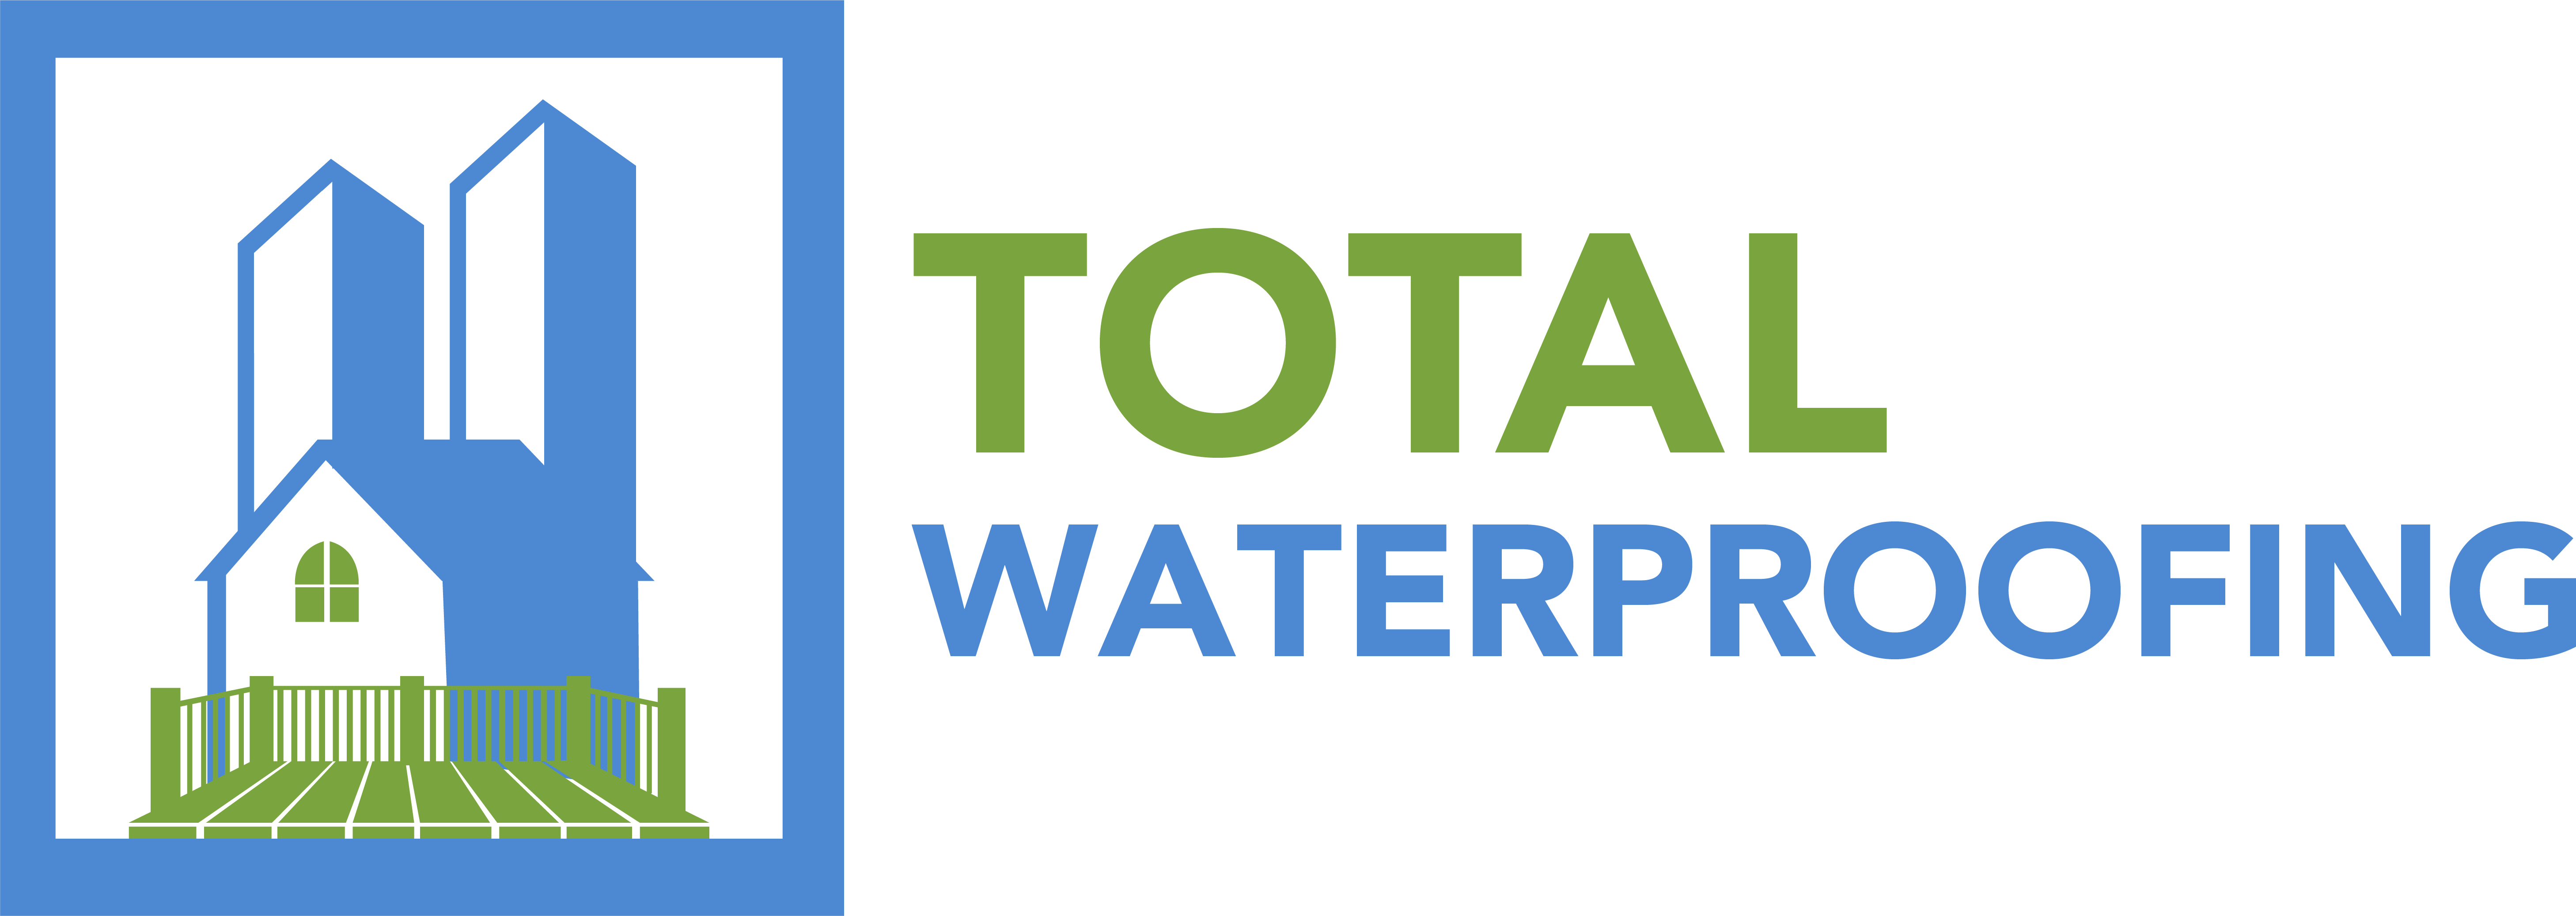 Total-Waterproofing-logo